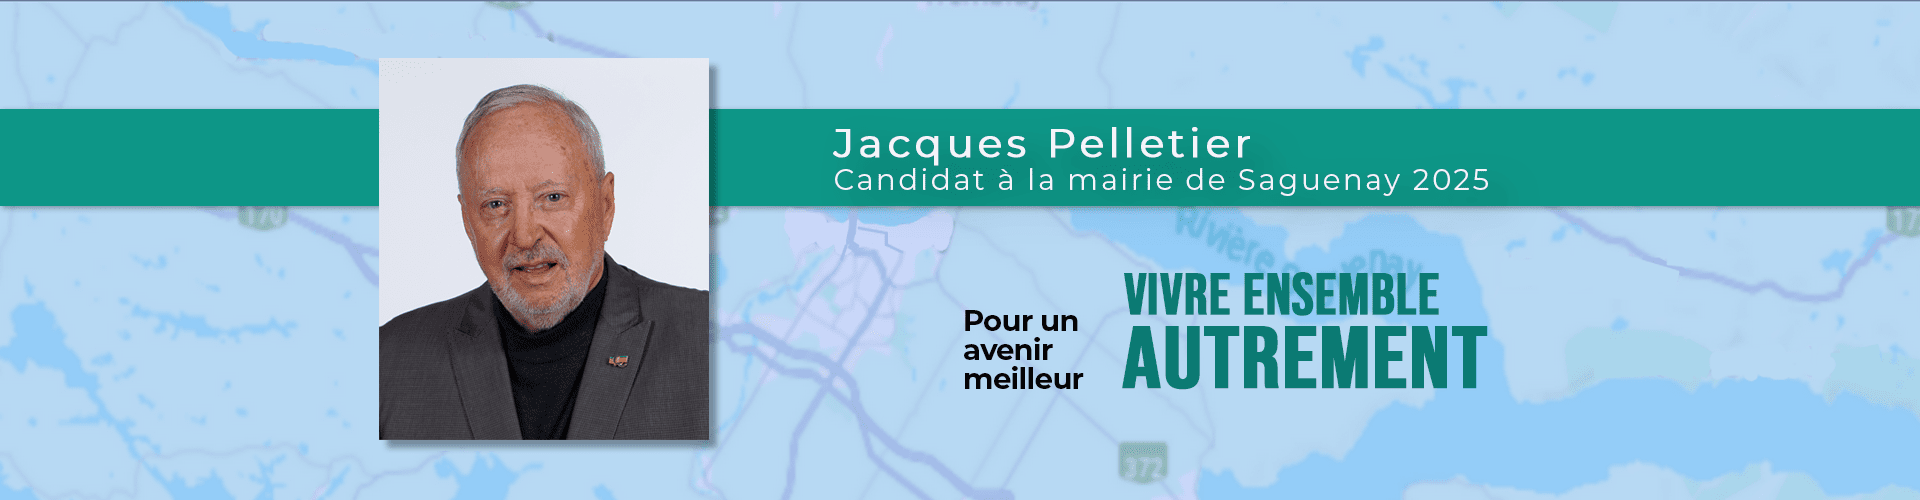 Jacques Pelletier, candidat à la mairie de Saguenay